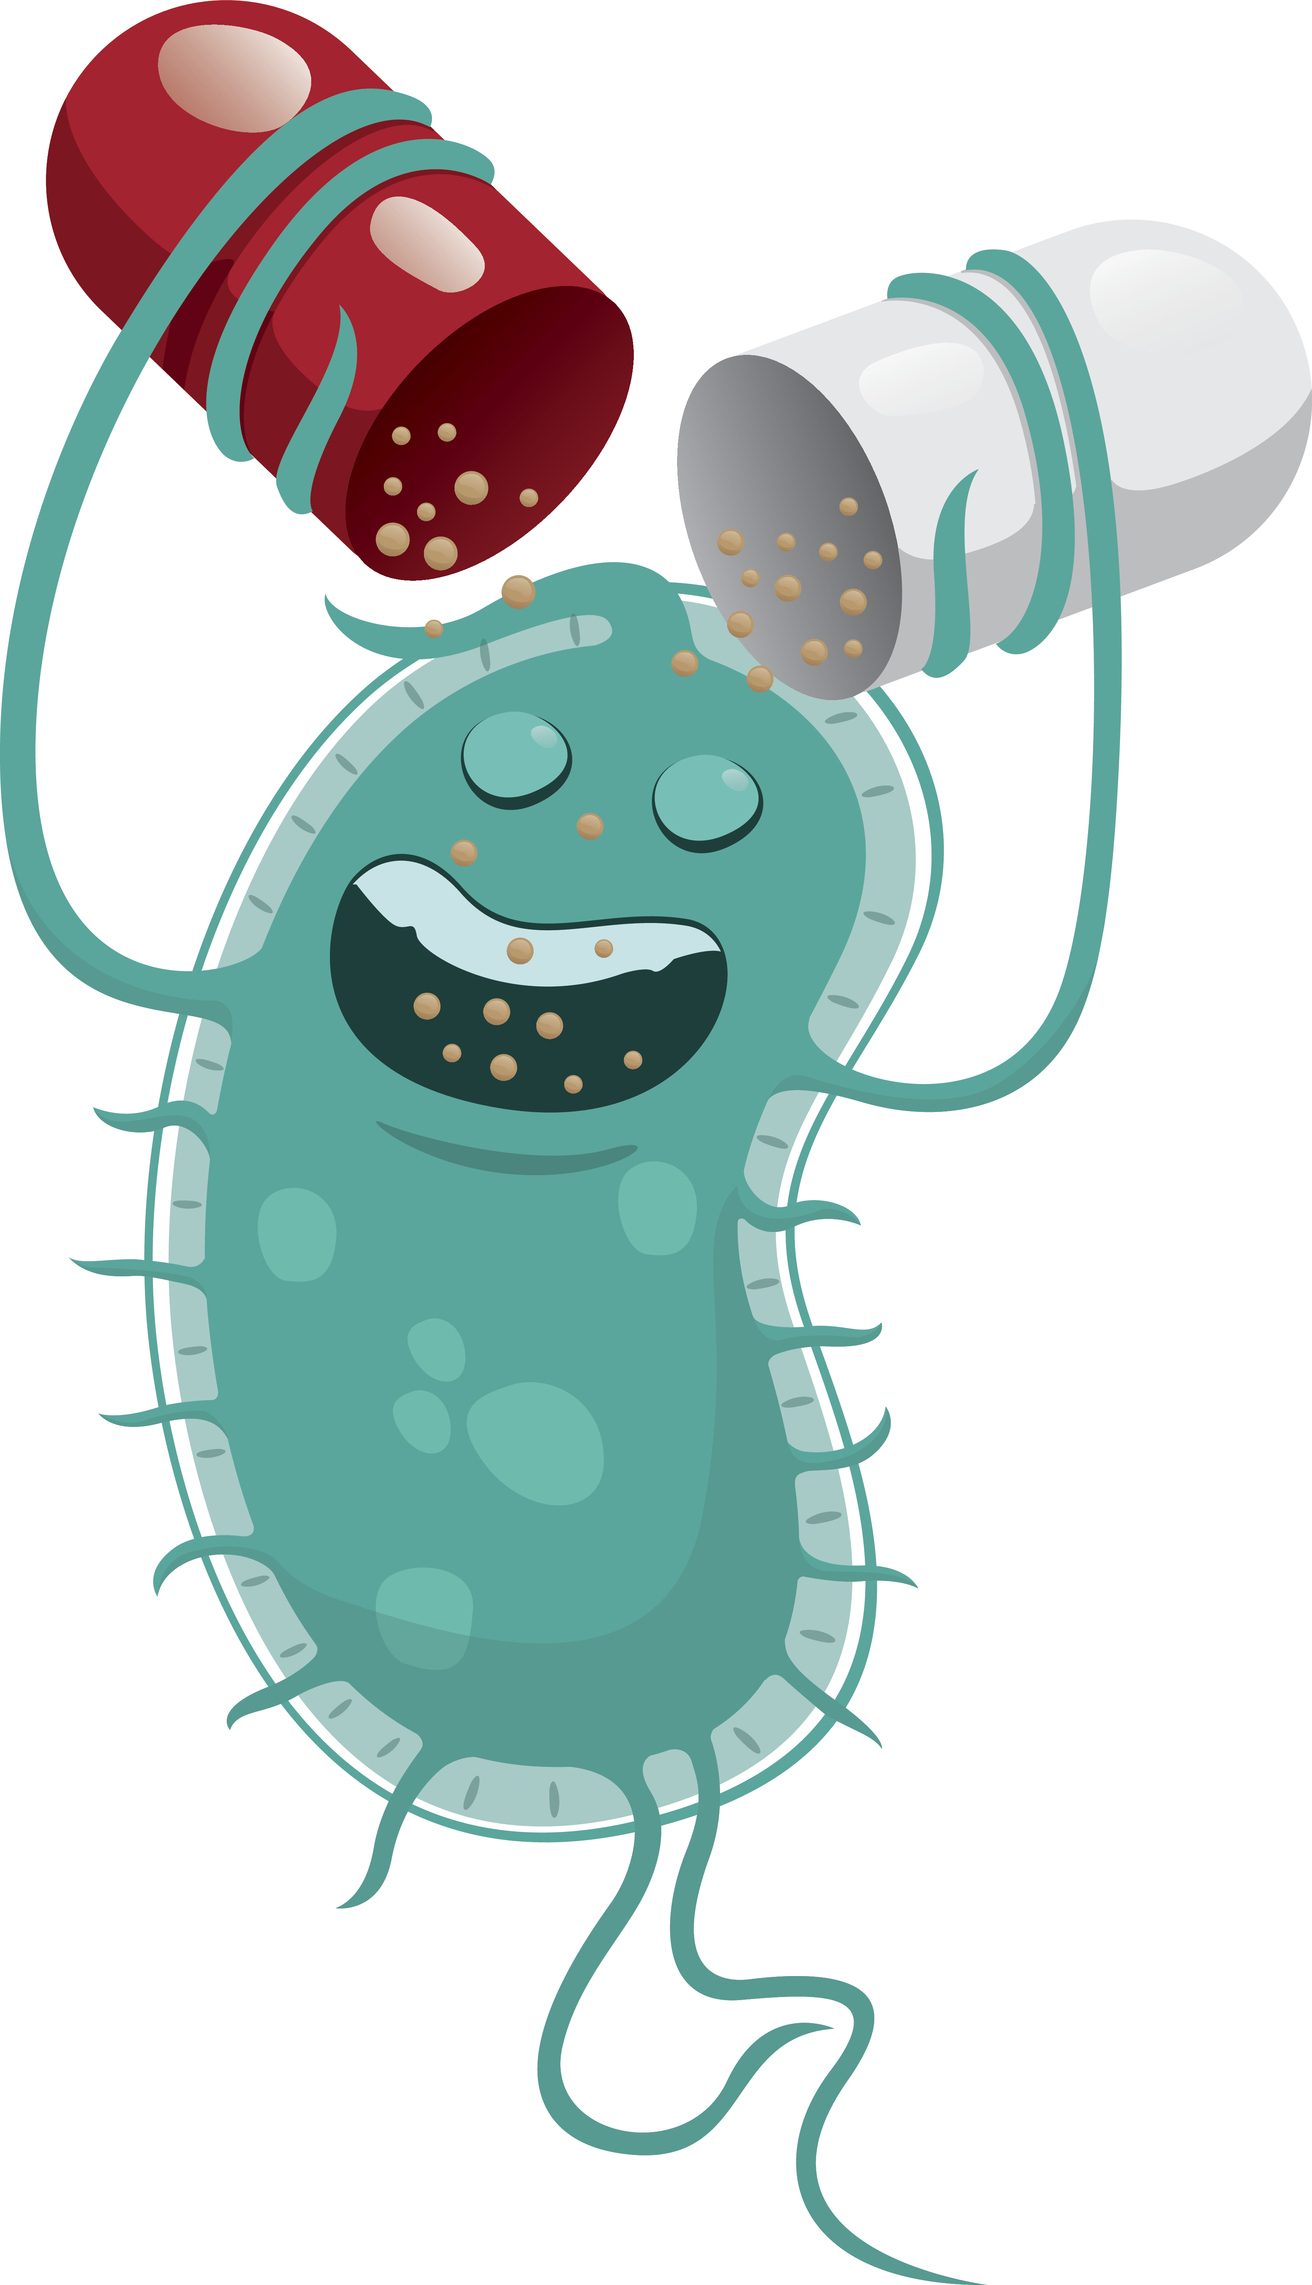 البكتيريا تنتصر على المضاد الحيوي كيف ندمرها نستخدم بكتيريا أخرى فهي السلاح الأقوى